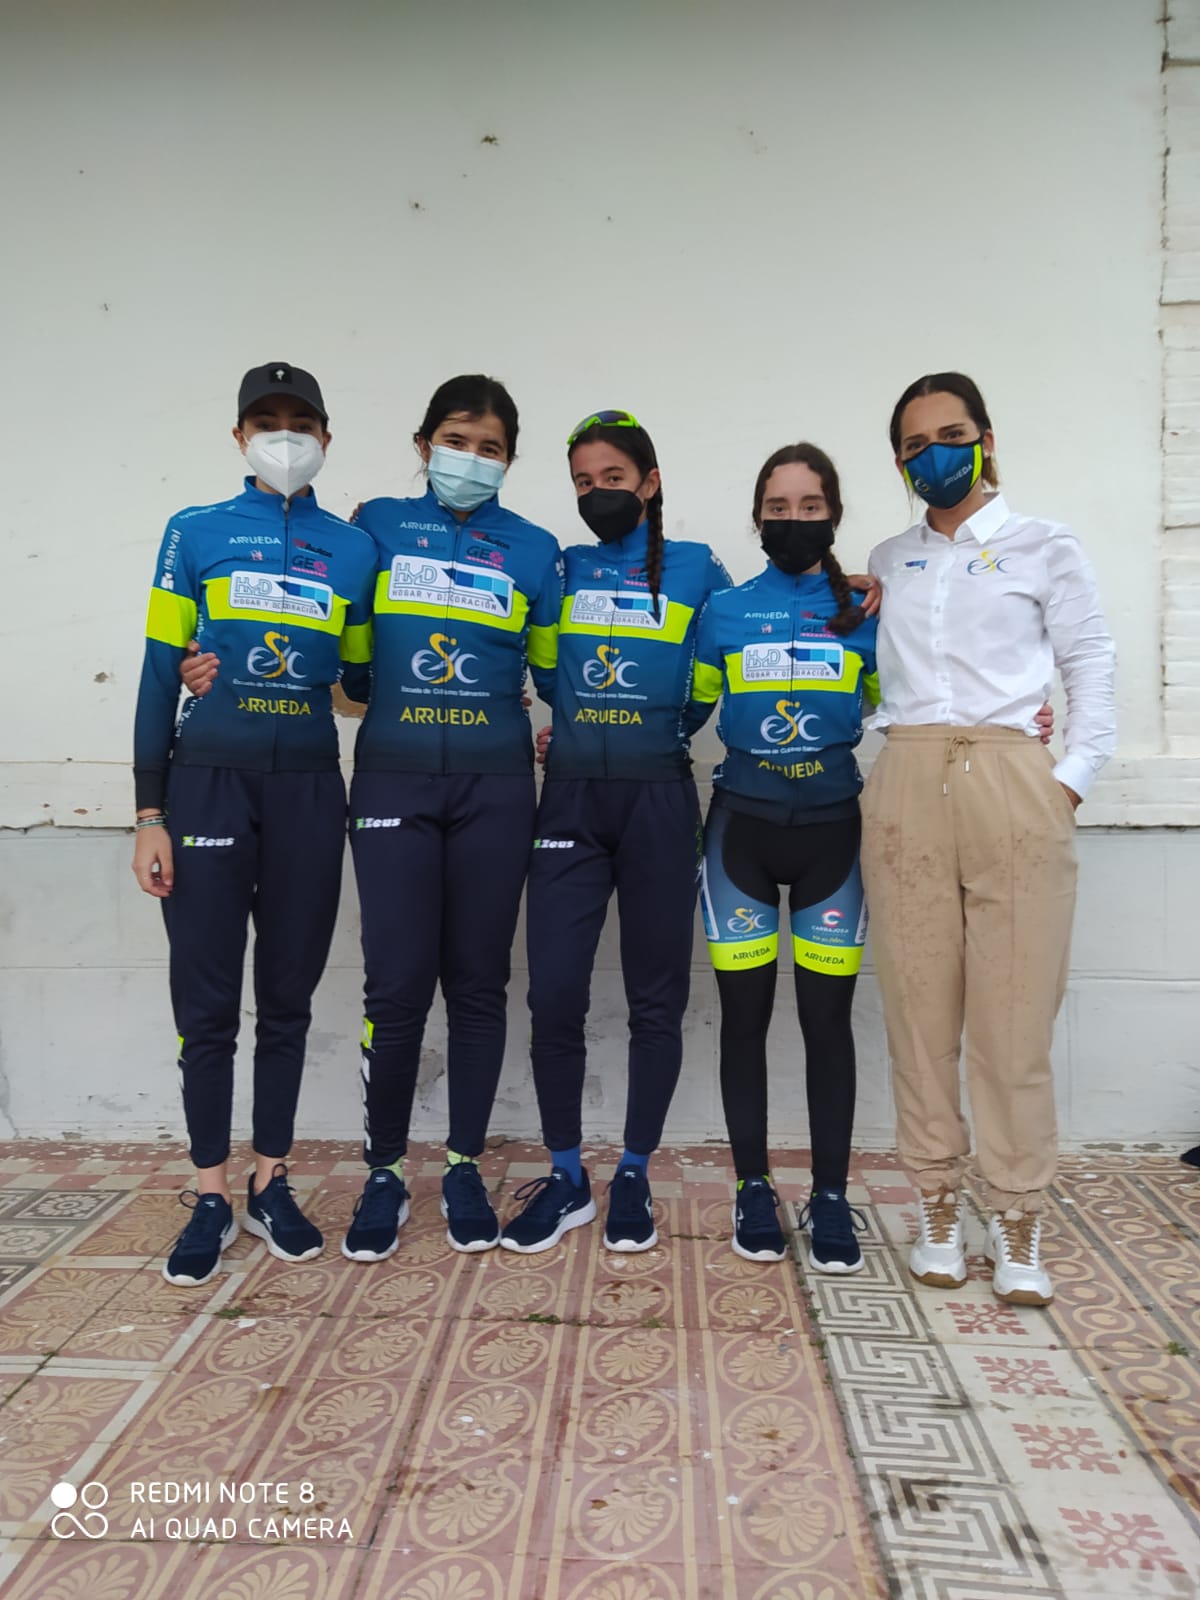 Victoria de Claudia Parra para el HyD Escuela de Ciclismo Salmantina en el GP Albares de la Ribera